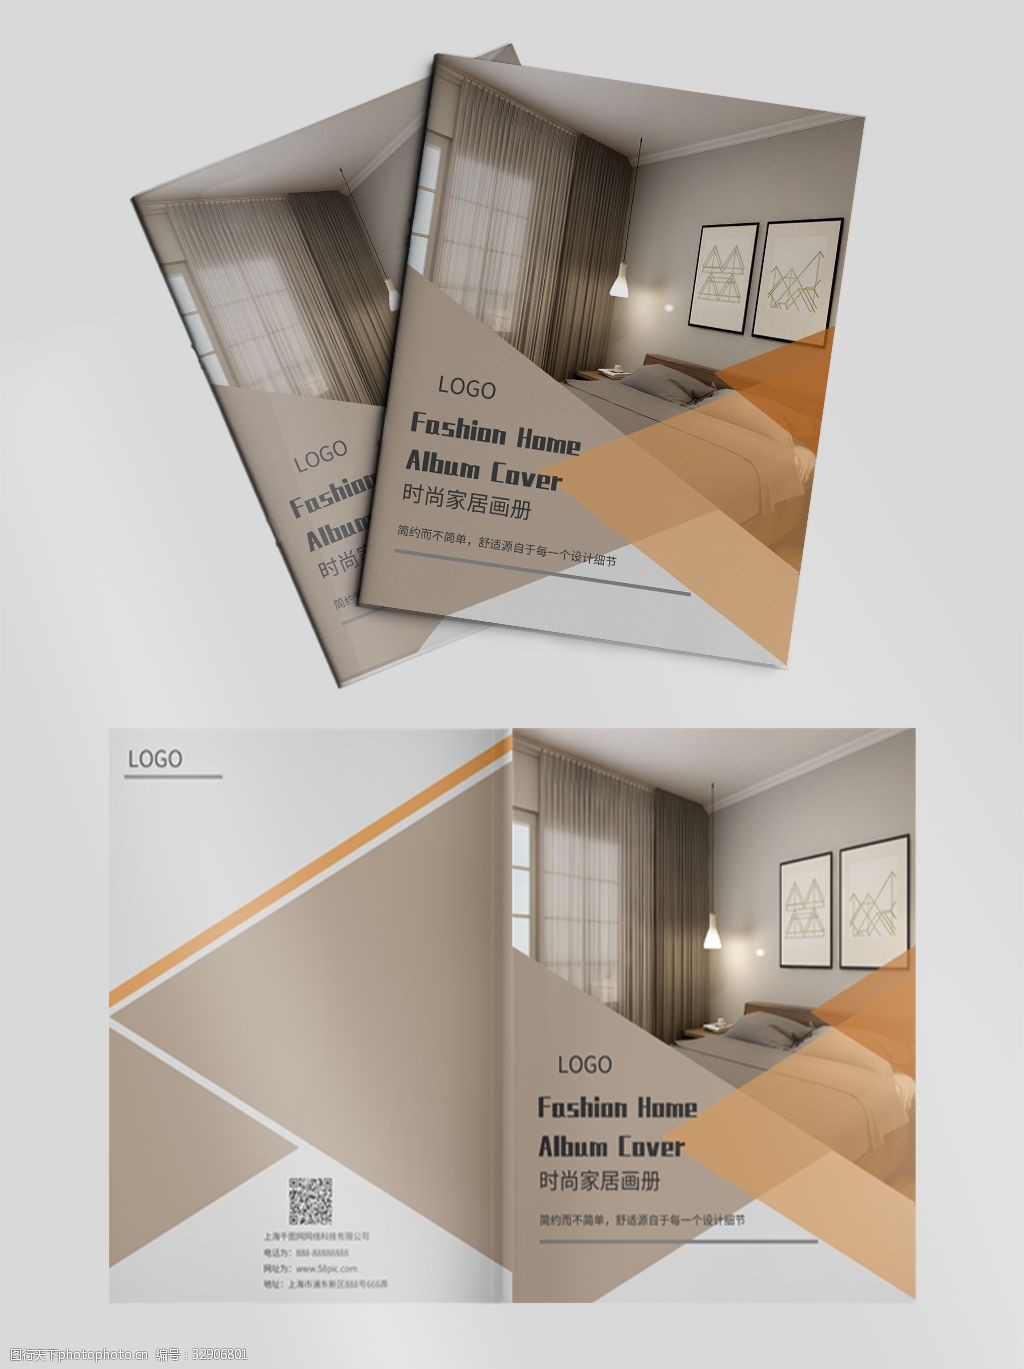 原创 简约 原创3d效果图 家居设计 画册封面